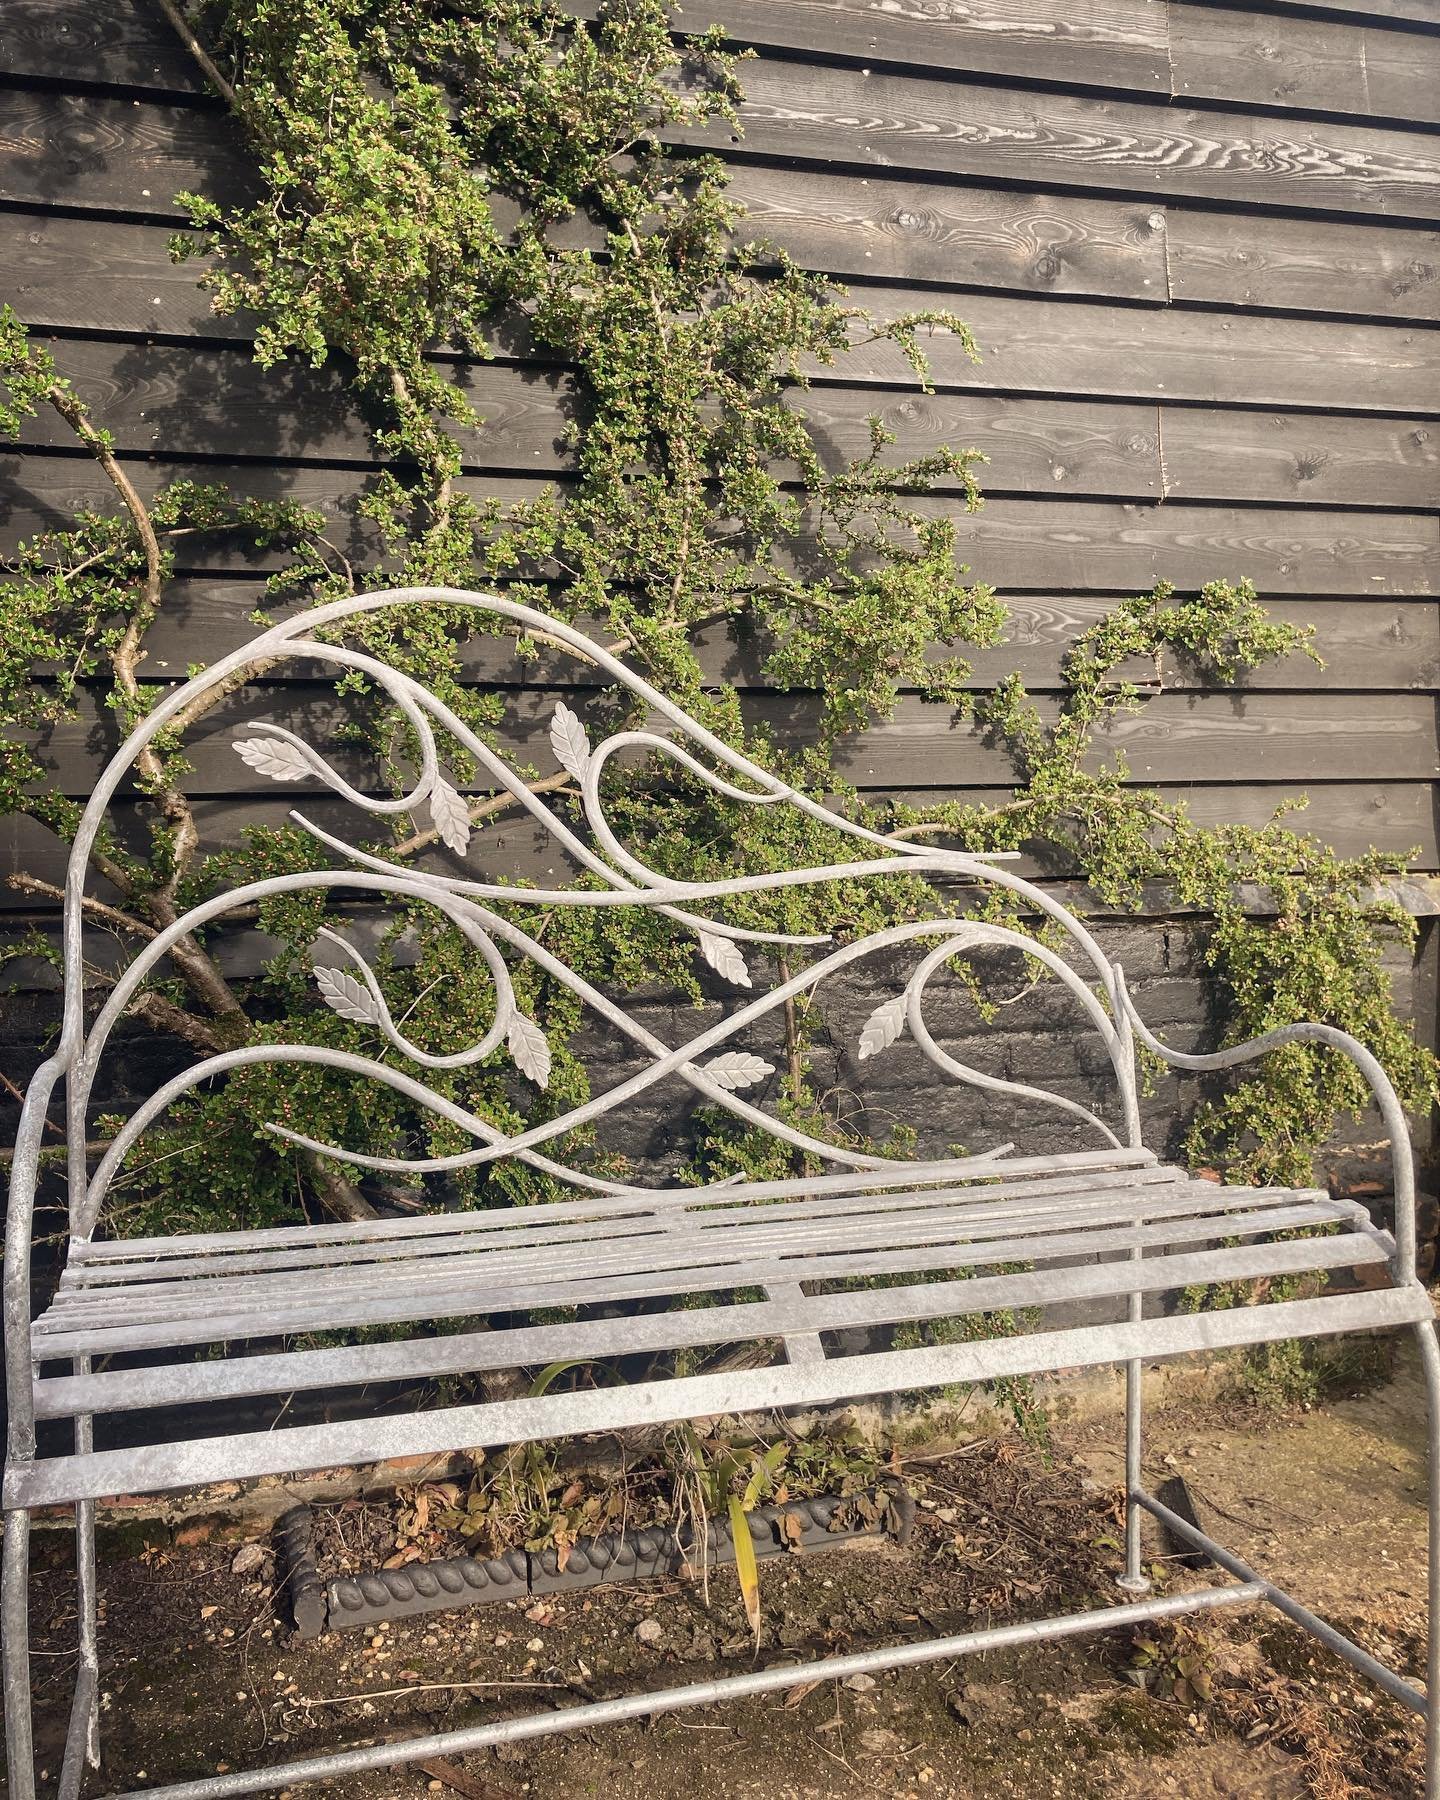 How much do you bench? #gardenbench #blacksmith #artistblacksmith #bench #gardendesignsideas #gardendesign #springgarden #metalwork #suffolk #gardenart #furniture #furnituredesign